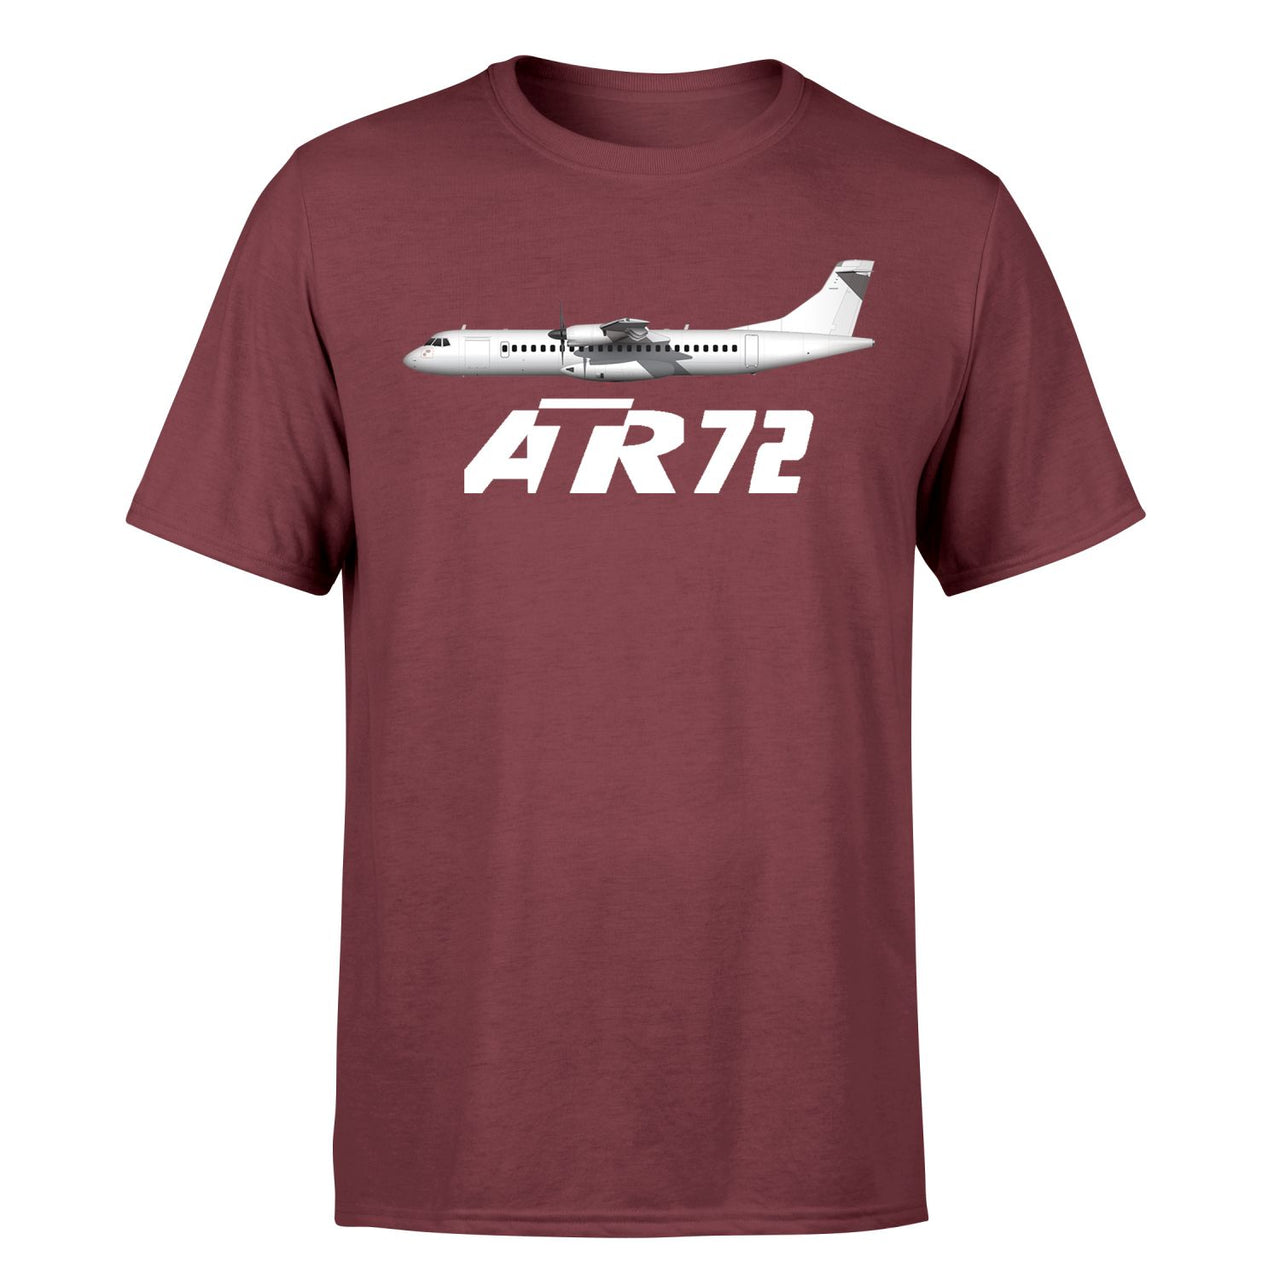 The ATR72 Designed T-Shirts